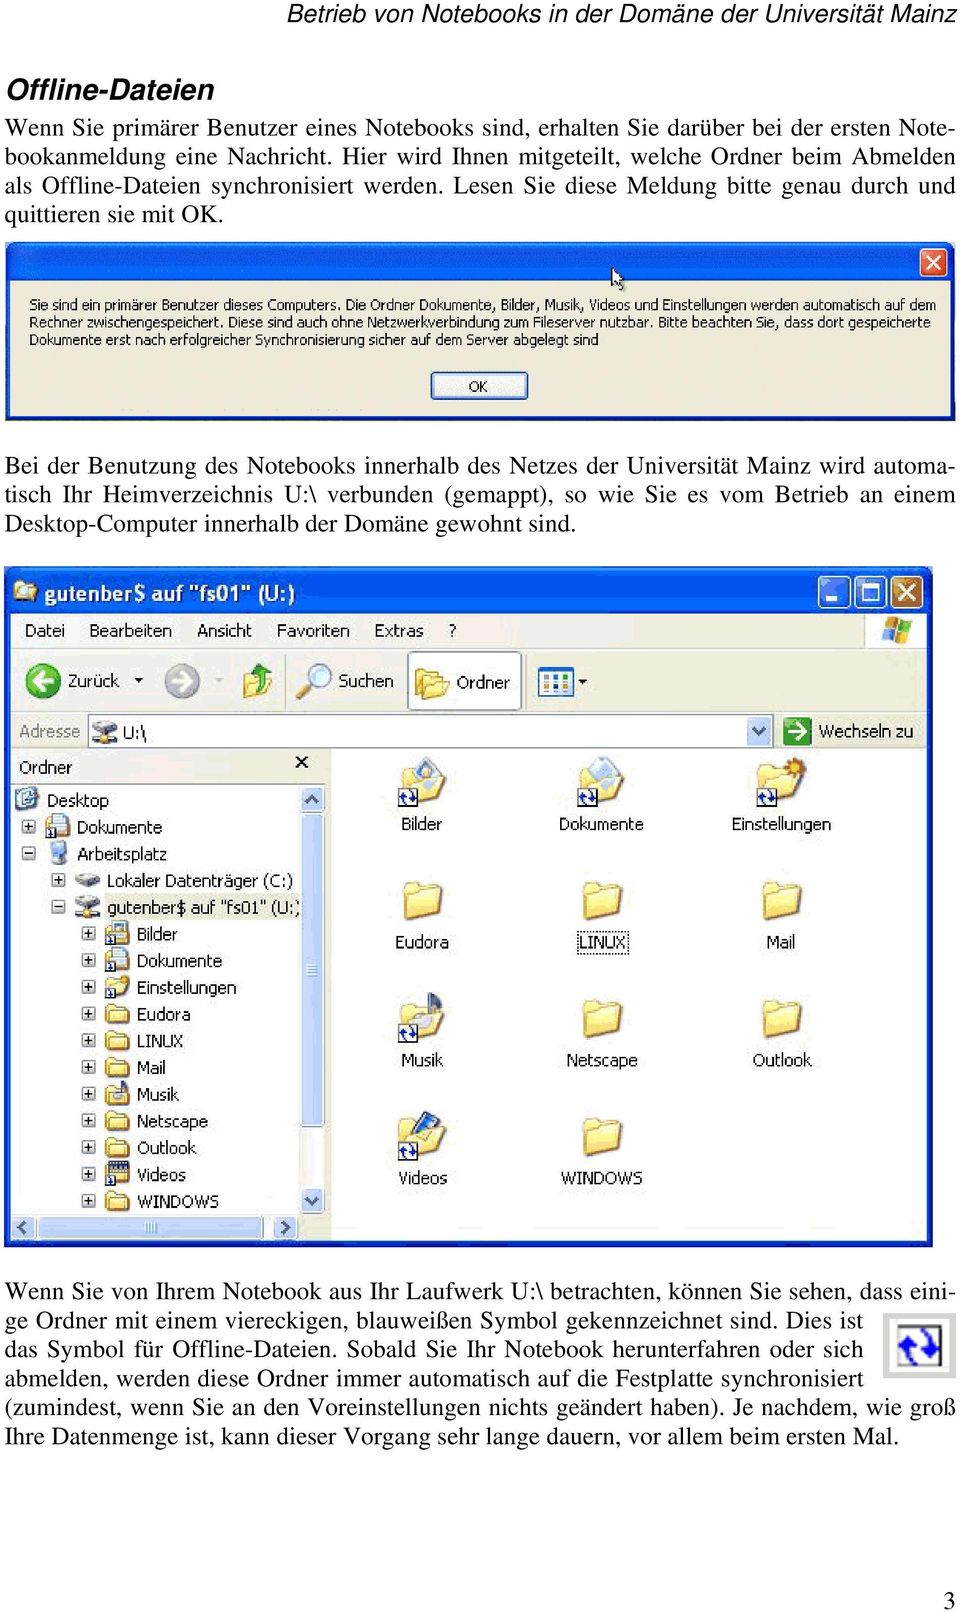 Bei der Benutzung des Notebooks innerhalb des Netzes der Universität Mainz wird automatisch Ihr Heimverzeichnis U:\ verbunden (gemappt), so wie Sie es vom Betrieb an einem Desktop-Computer innerhalb